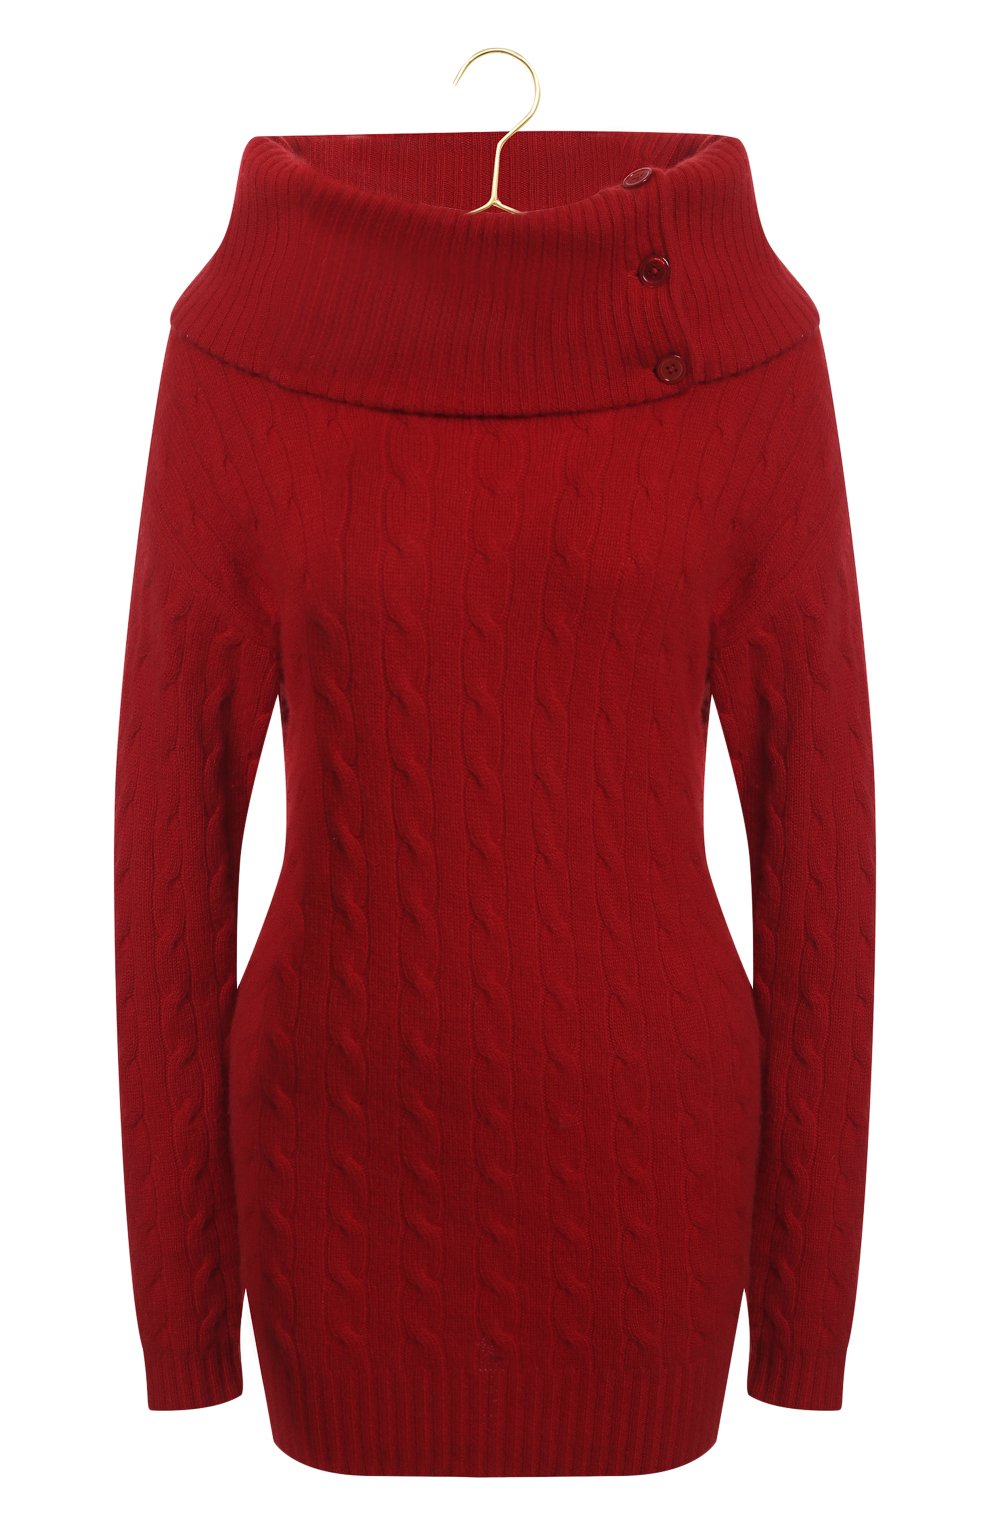 Кашемировый свитер | Ralph Lauren | Красный - 1